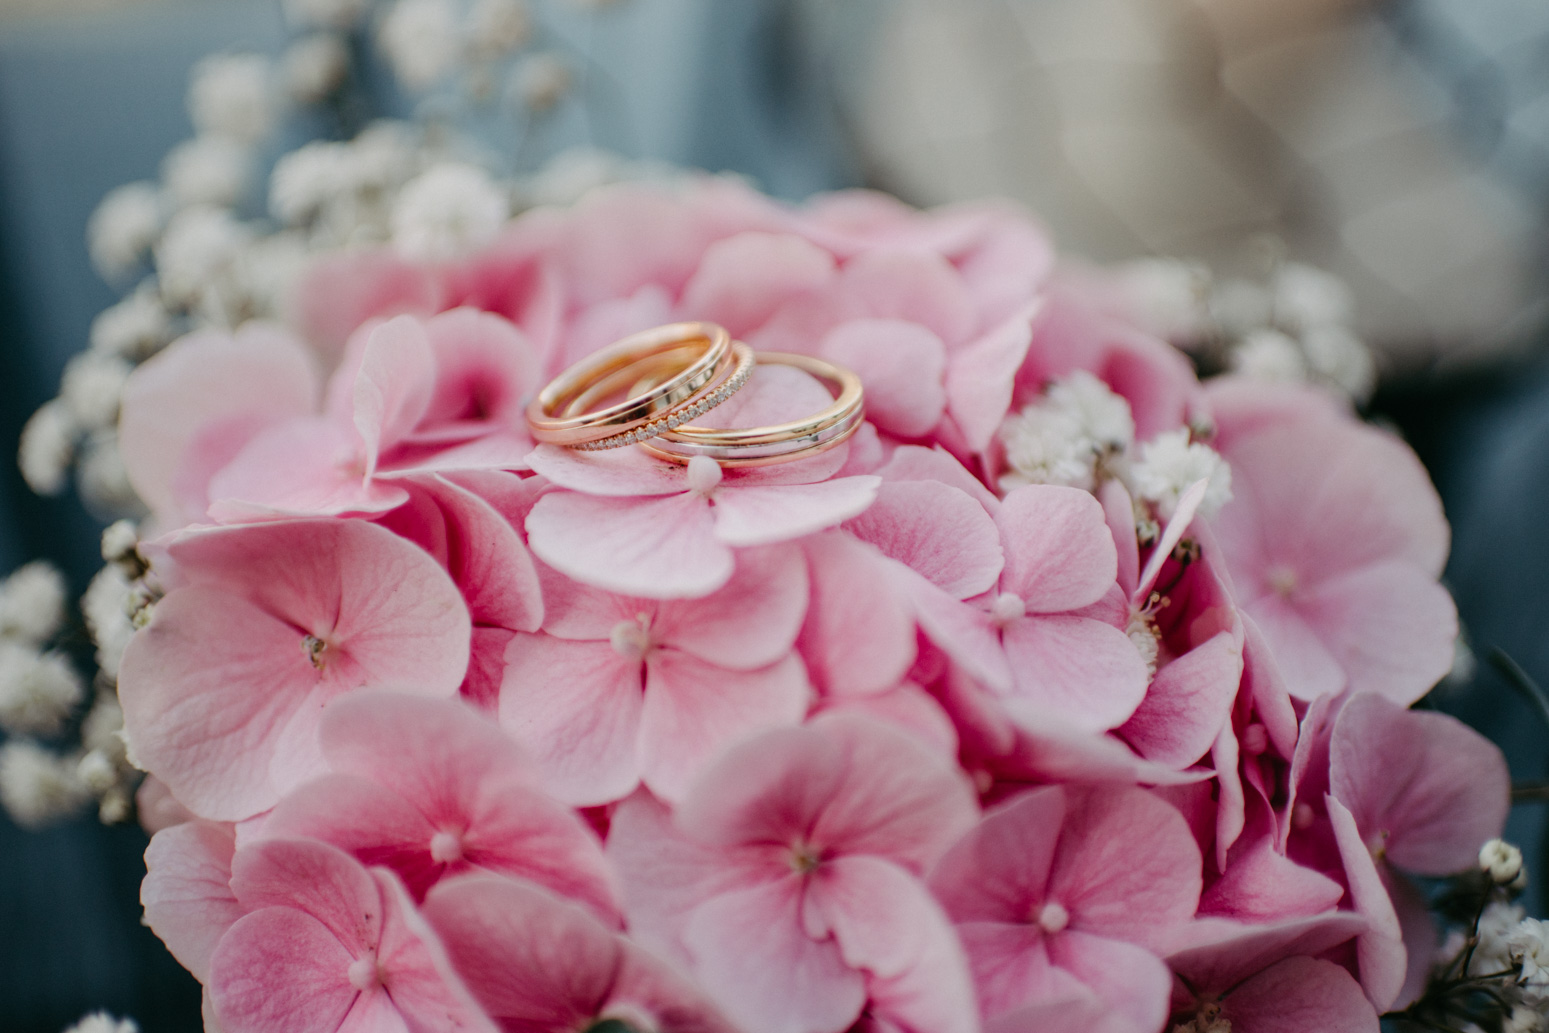 Tricolor Eheringe auf einer pinken Hortensie, Foto von der Hochzeitsfotografin Daria Becker, Genuine Bonds 